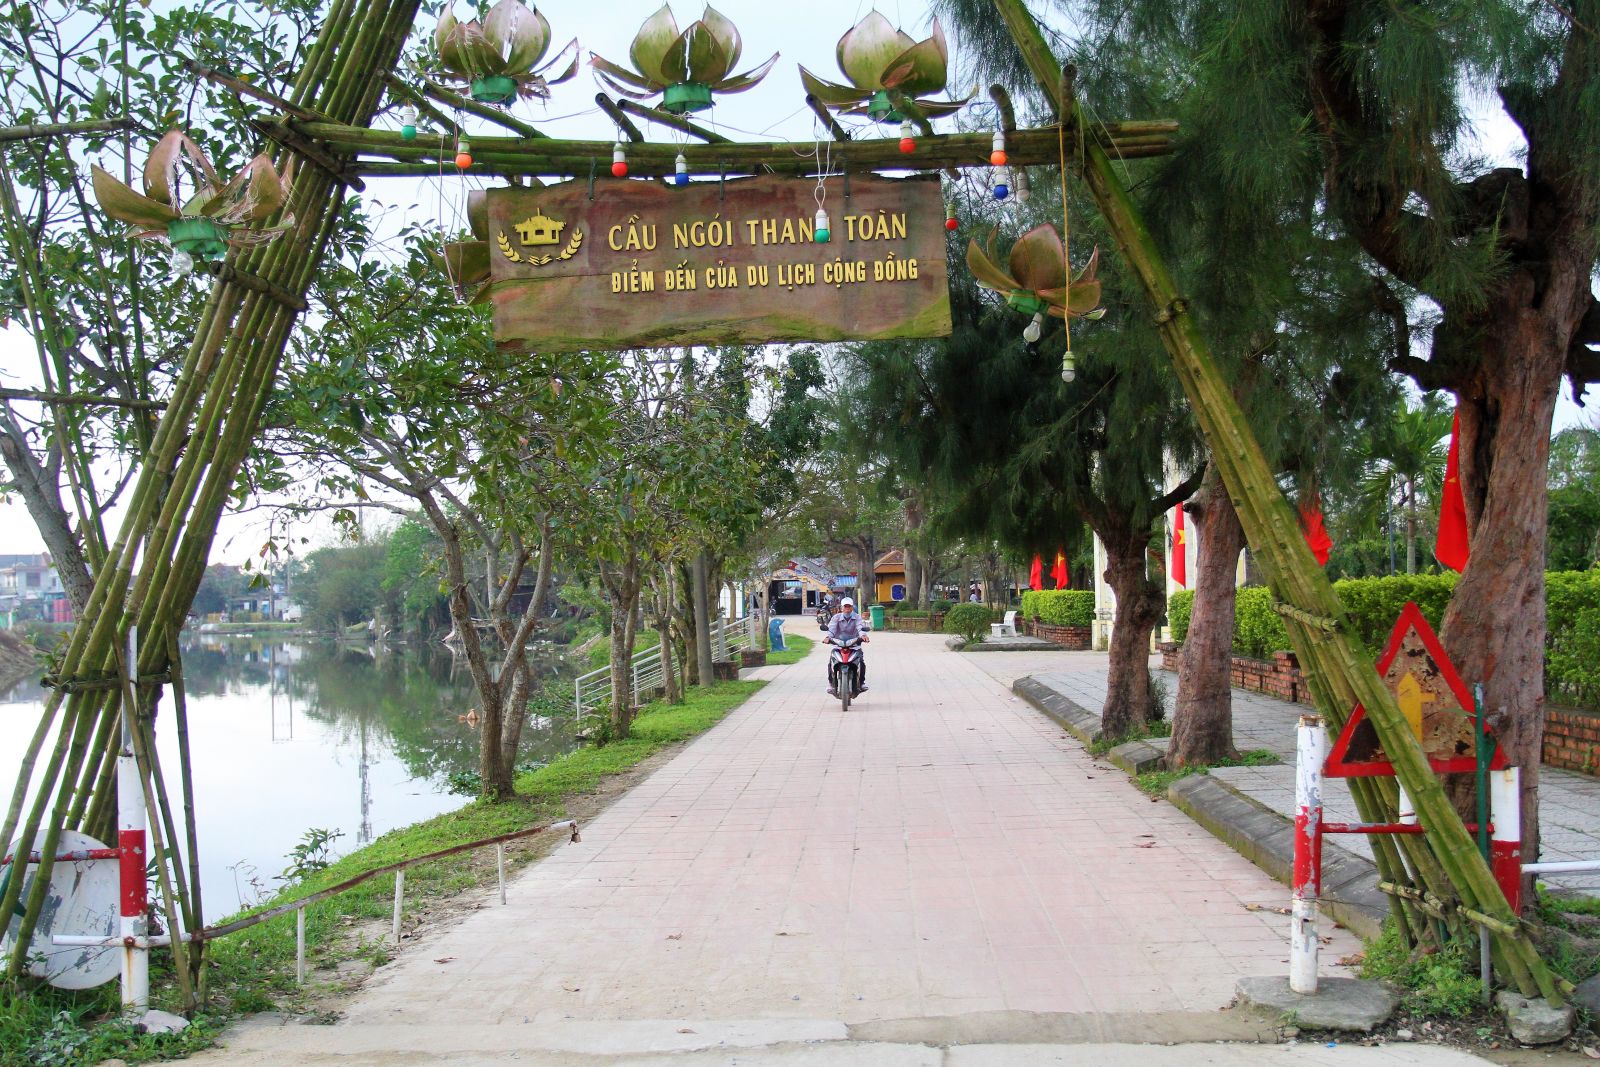  Du lịch tỉnh Thừa Thiên – Huế vắng khách trong một thời gian dài do dịch bệnh